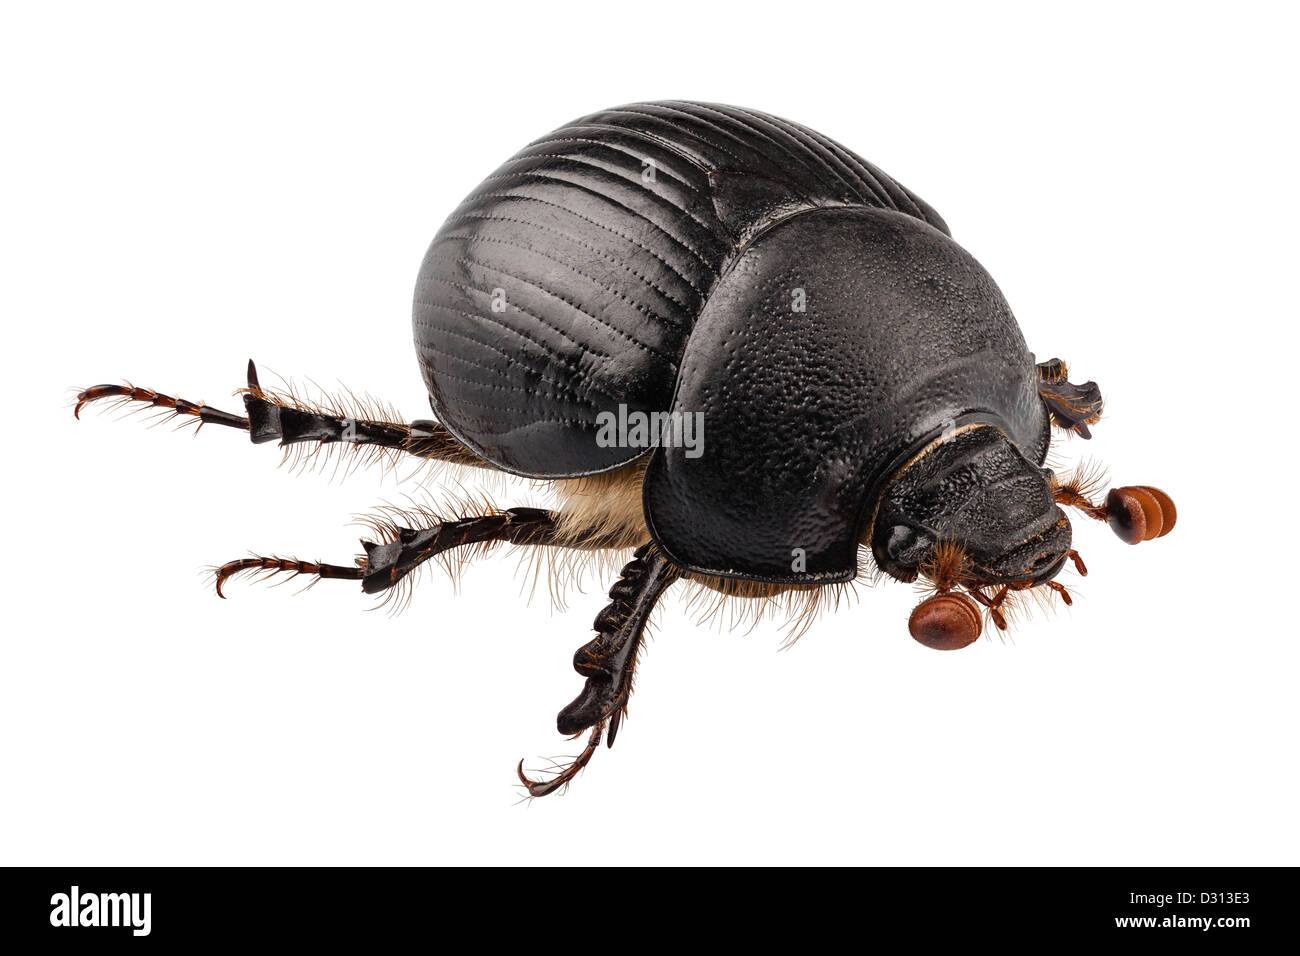 Tierra-aburrida de especies de escarabajos del estiércol Geotrupes stercorarius Foto de stock